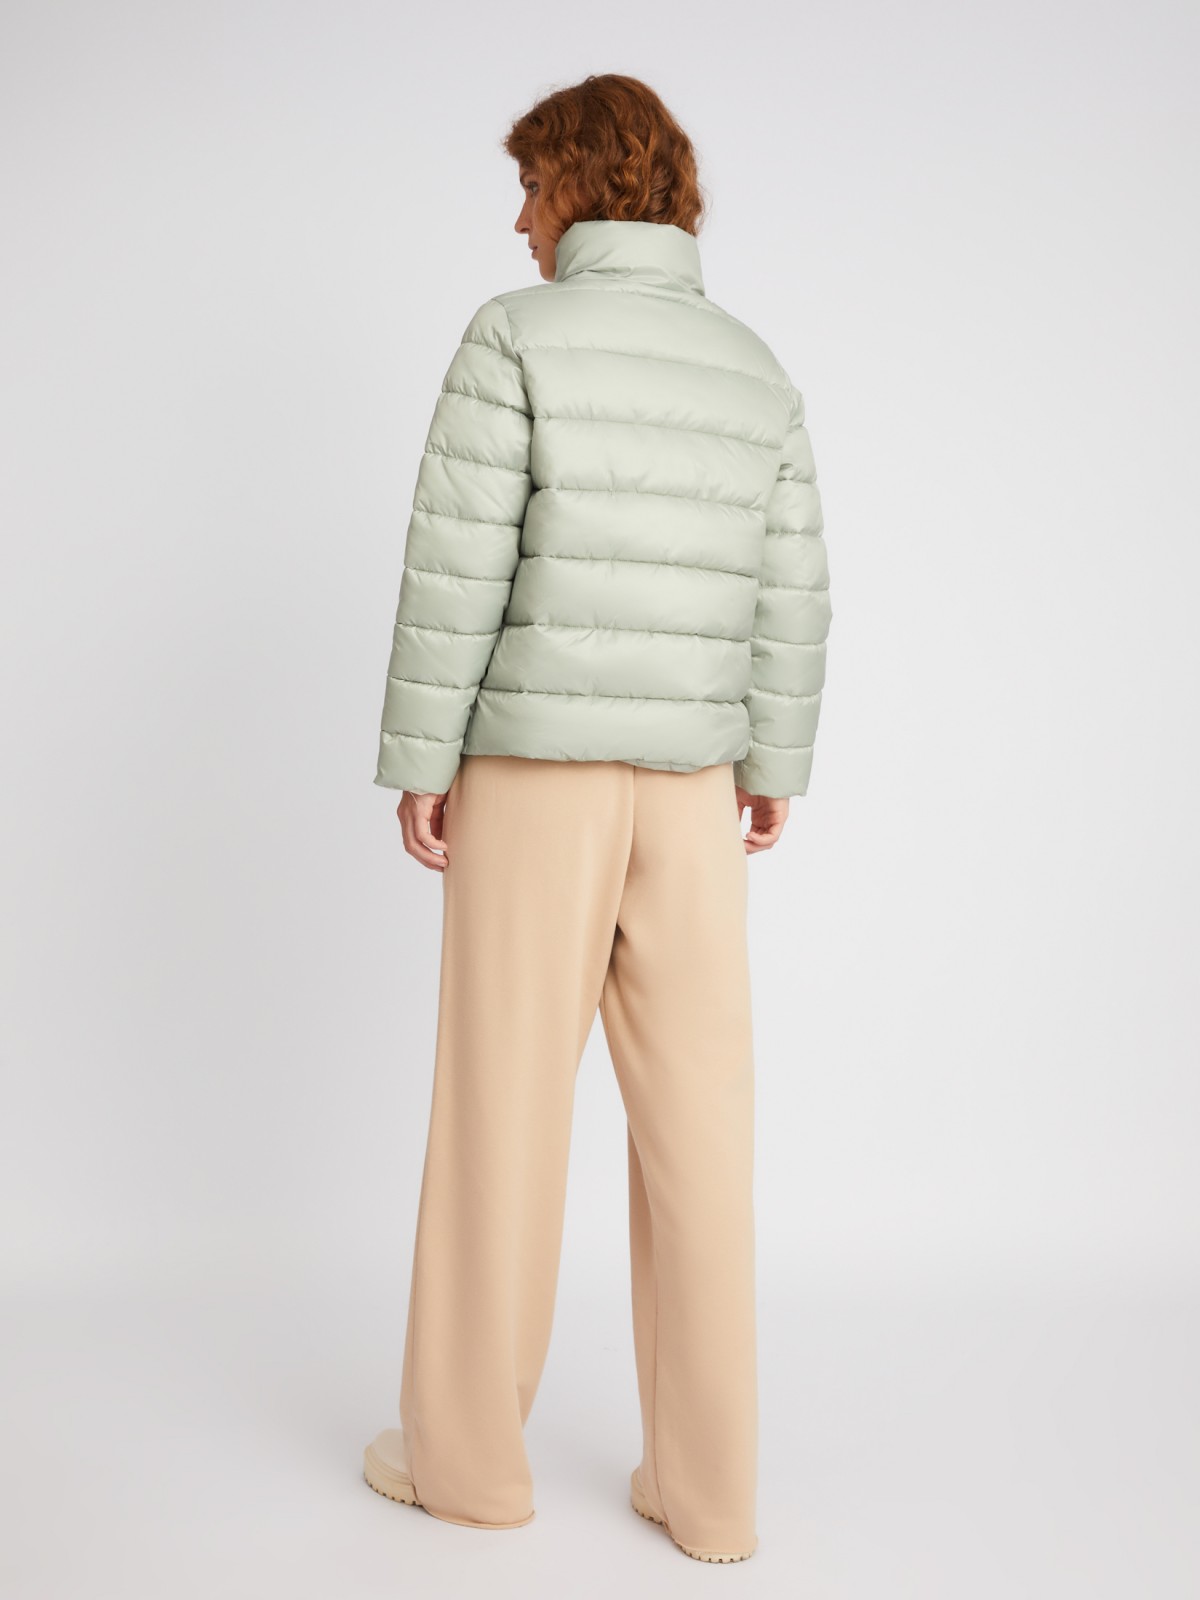 Тёплая стёганая куртка на молнии с высоким воротником zolla 023335102204, цвет светло-зеленый, размер M - фото 5